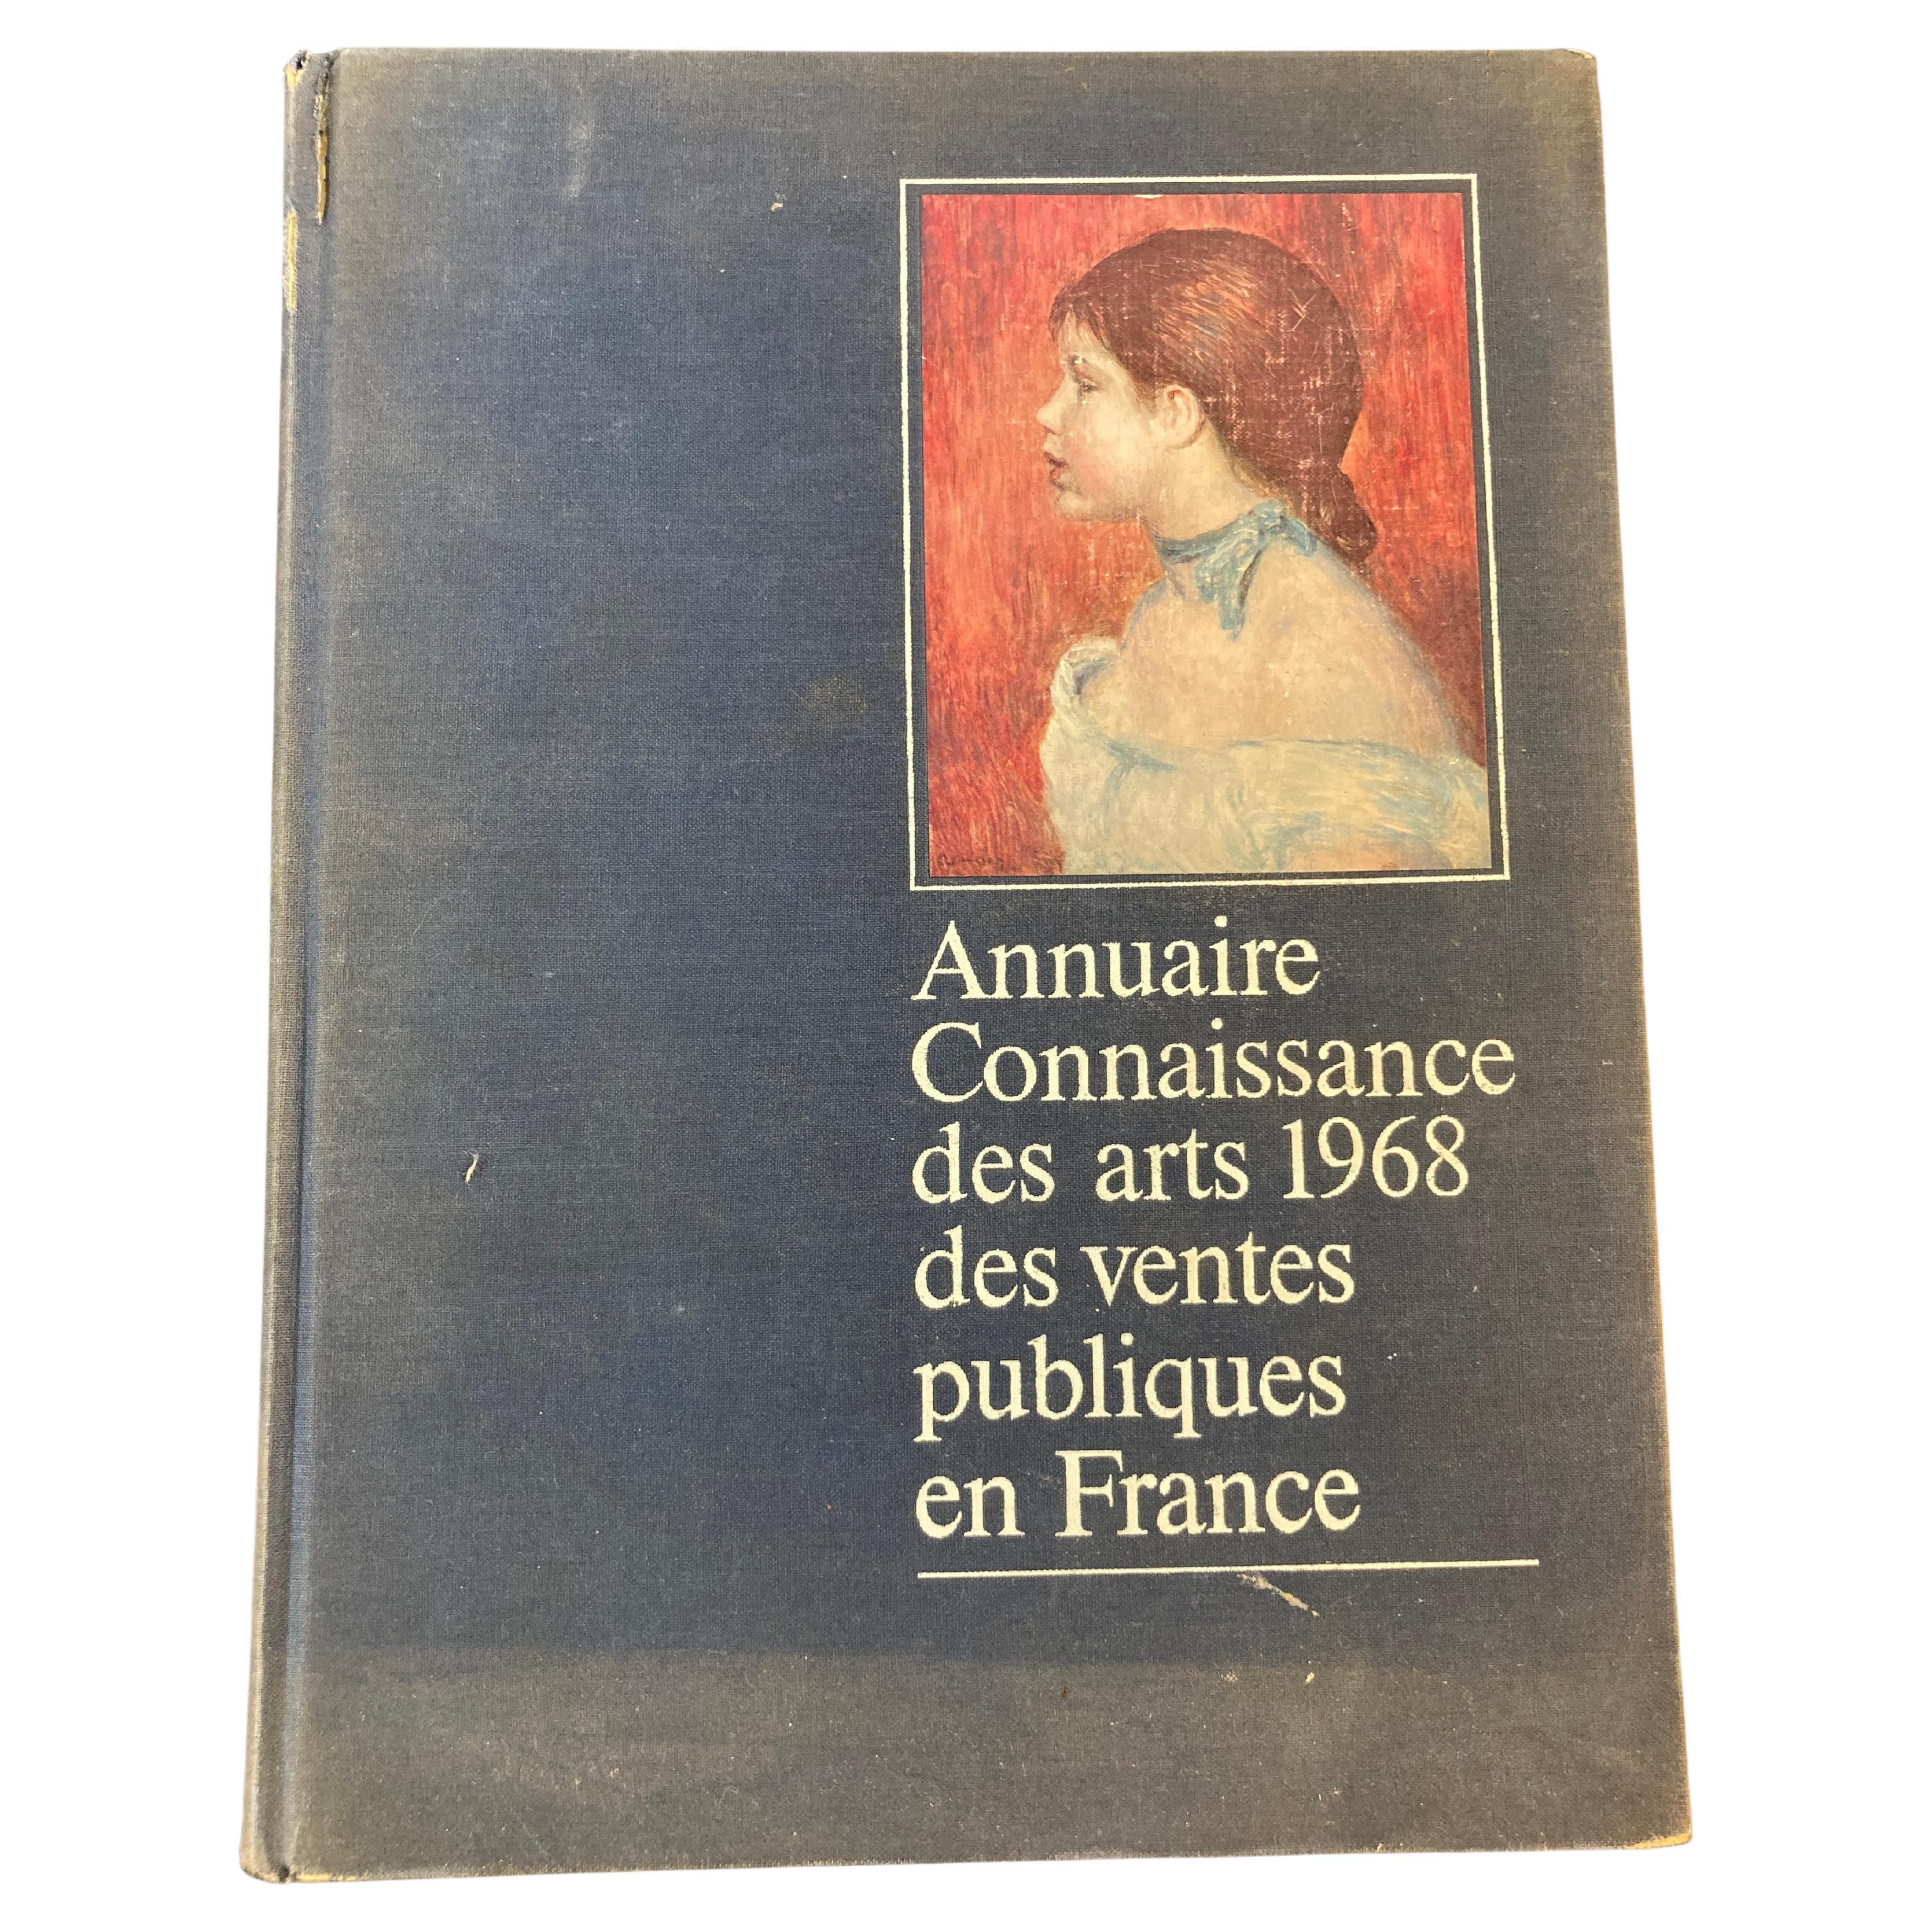 Annuaire connaissance des arts 1968 des ventes publiques en France Hardcover